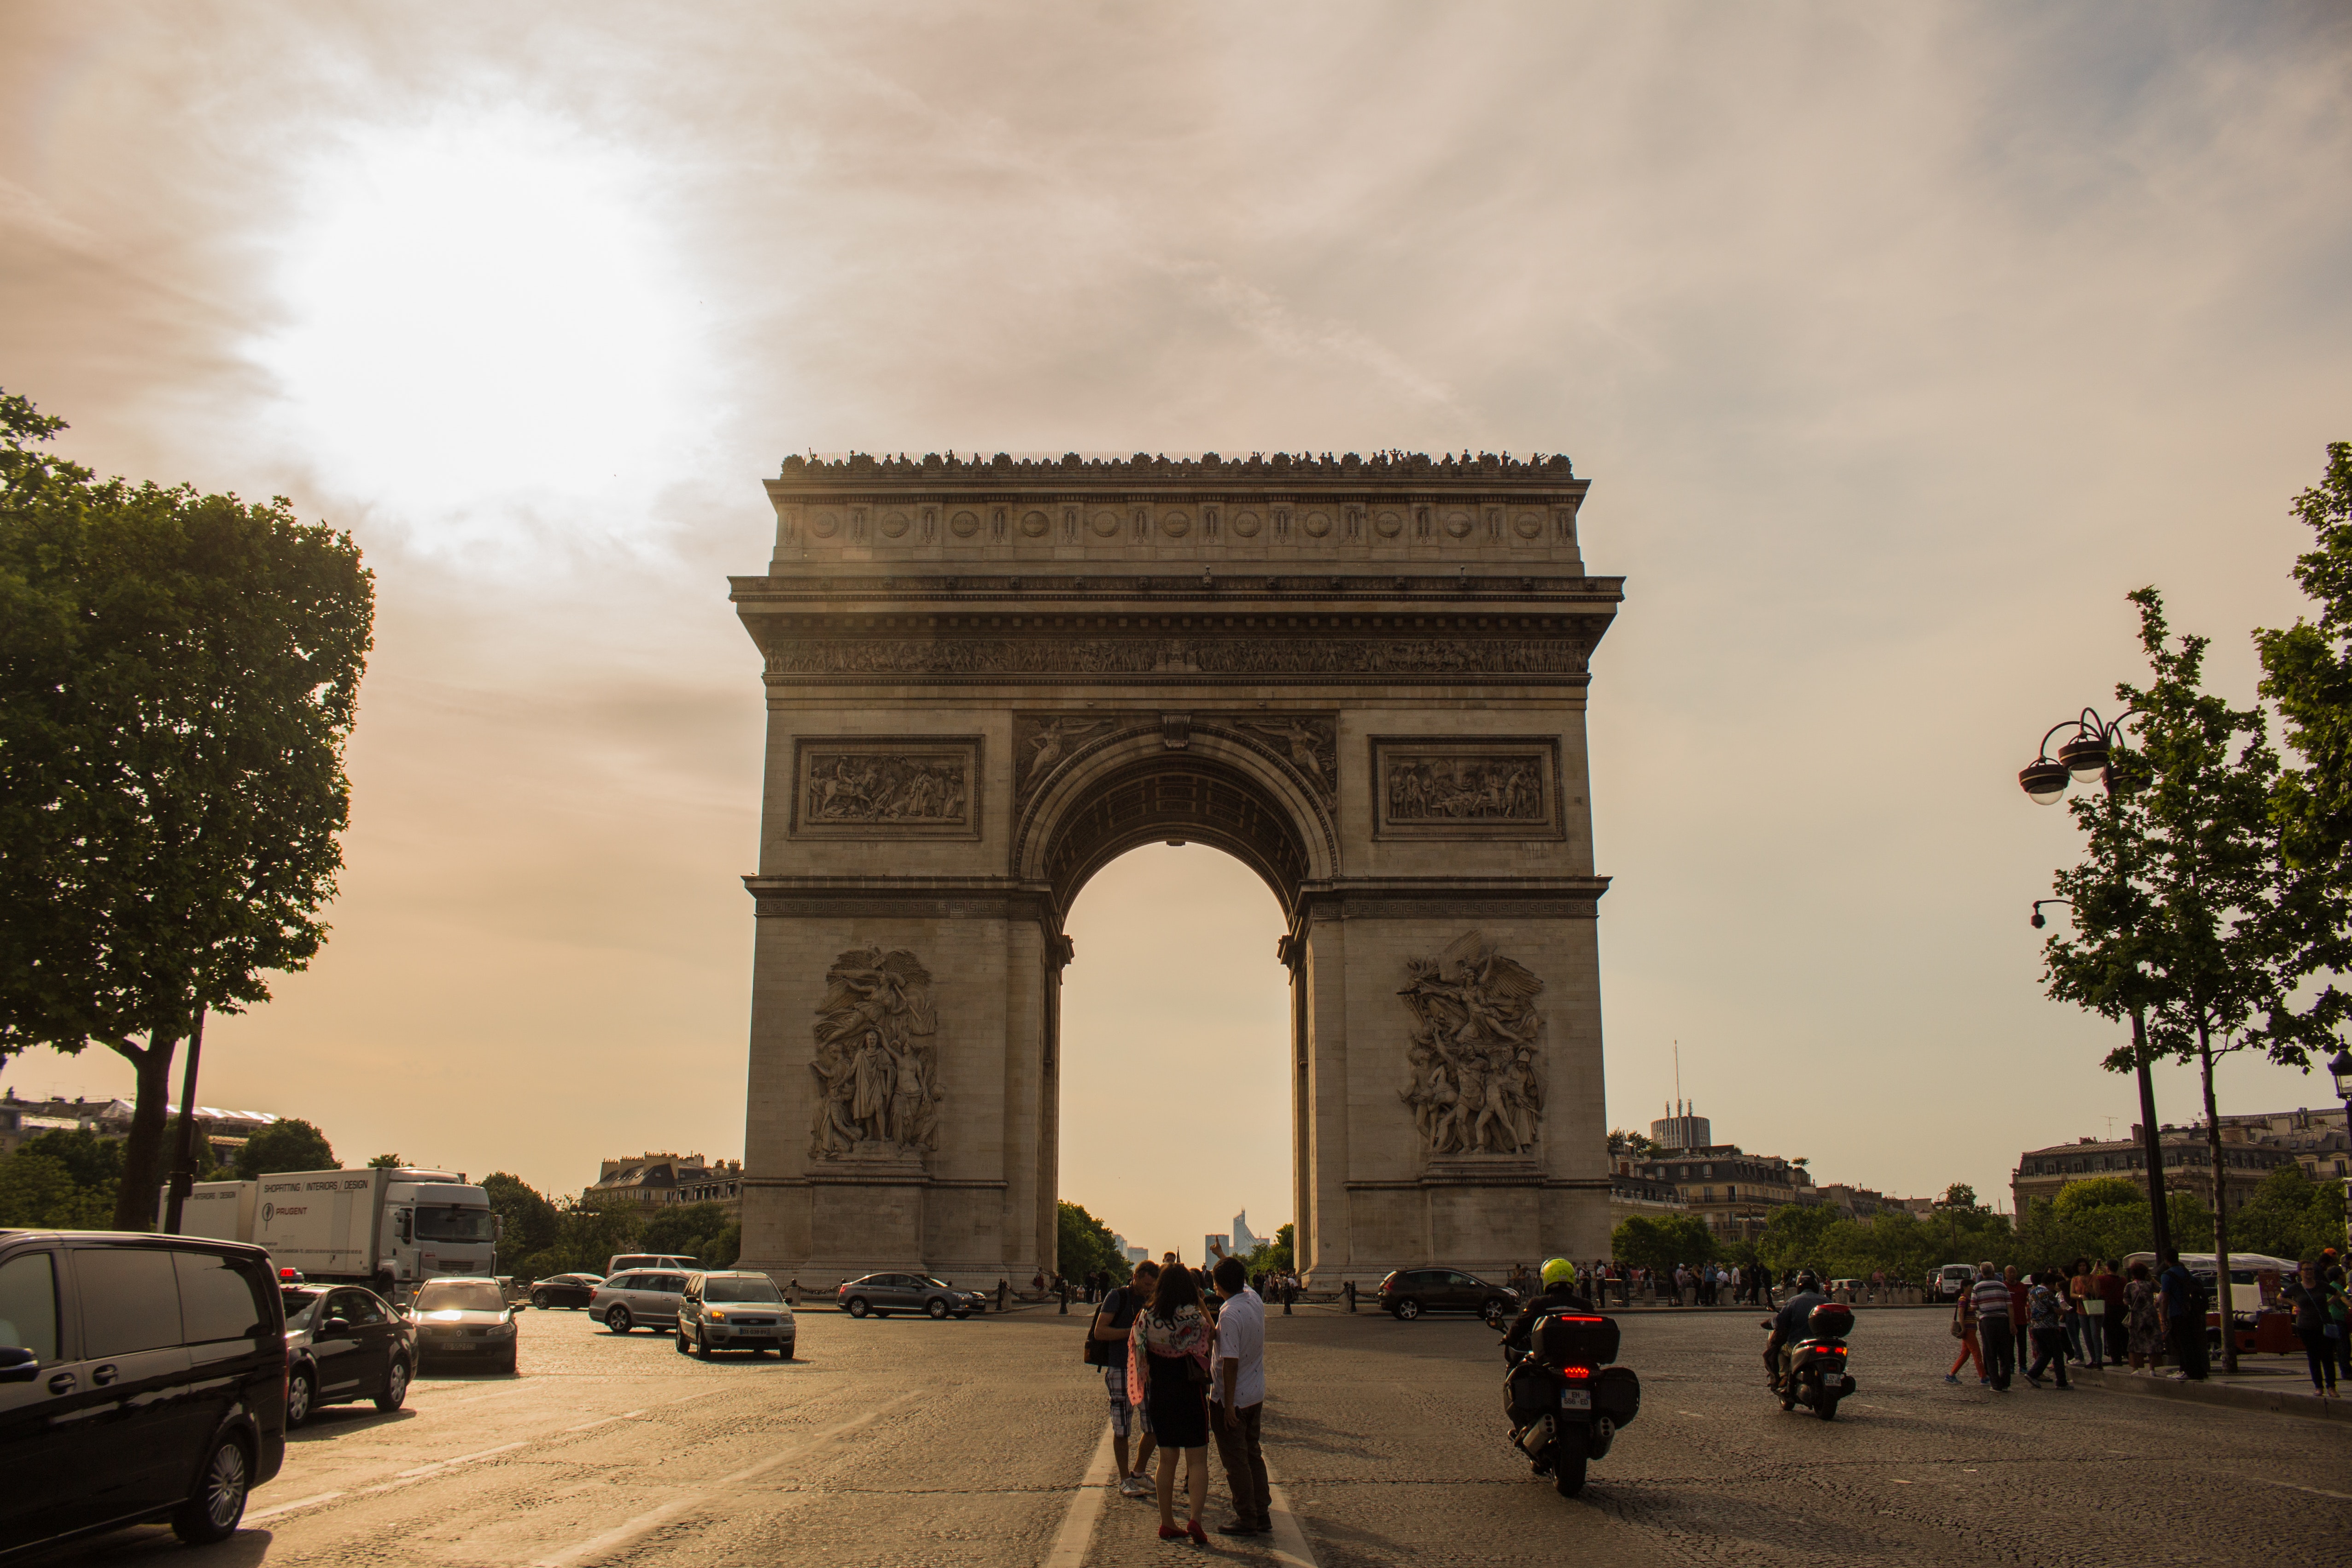 Arc de triomphe in paris, france photo